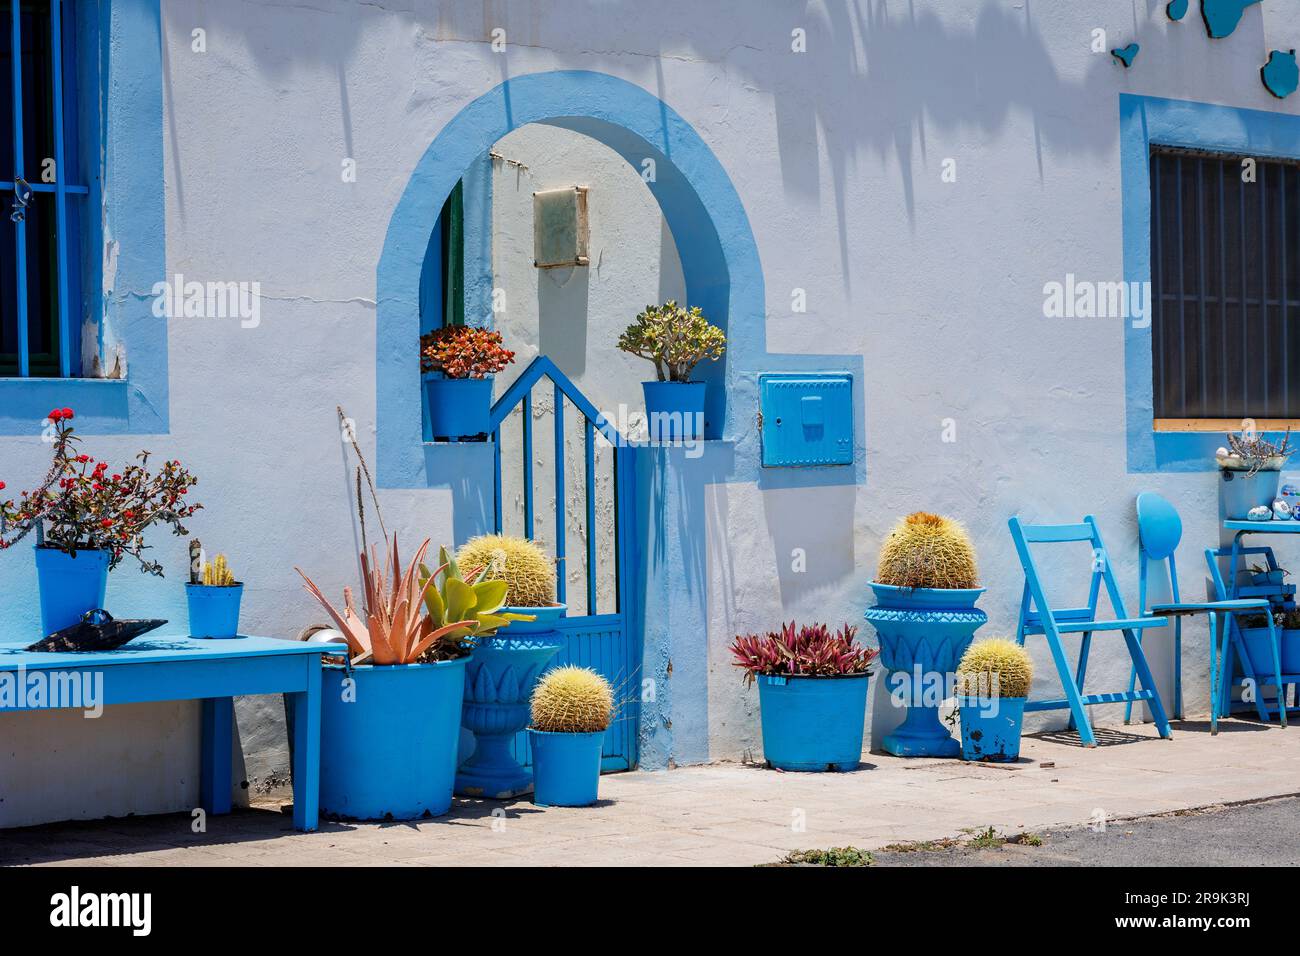 Hübsche blau-weiße Hütten in Salinas del Carmen Fuerteventura Kanarische Inseln Spanien Stockfoto